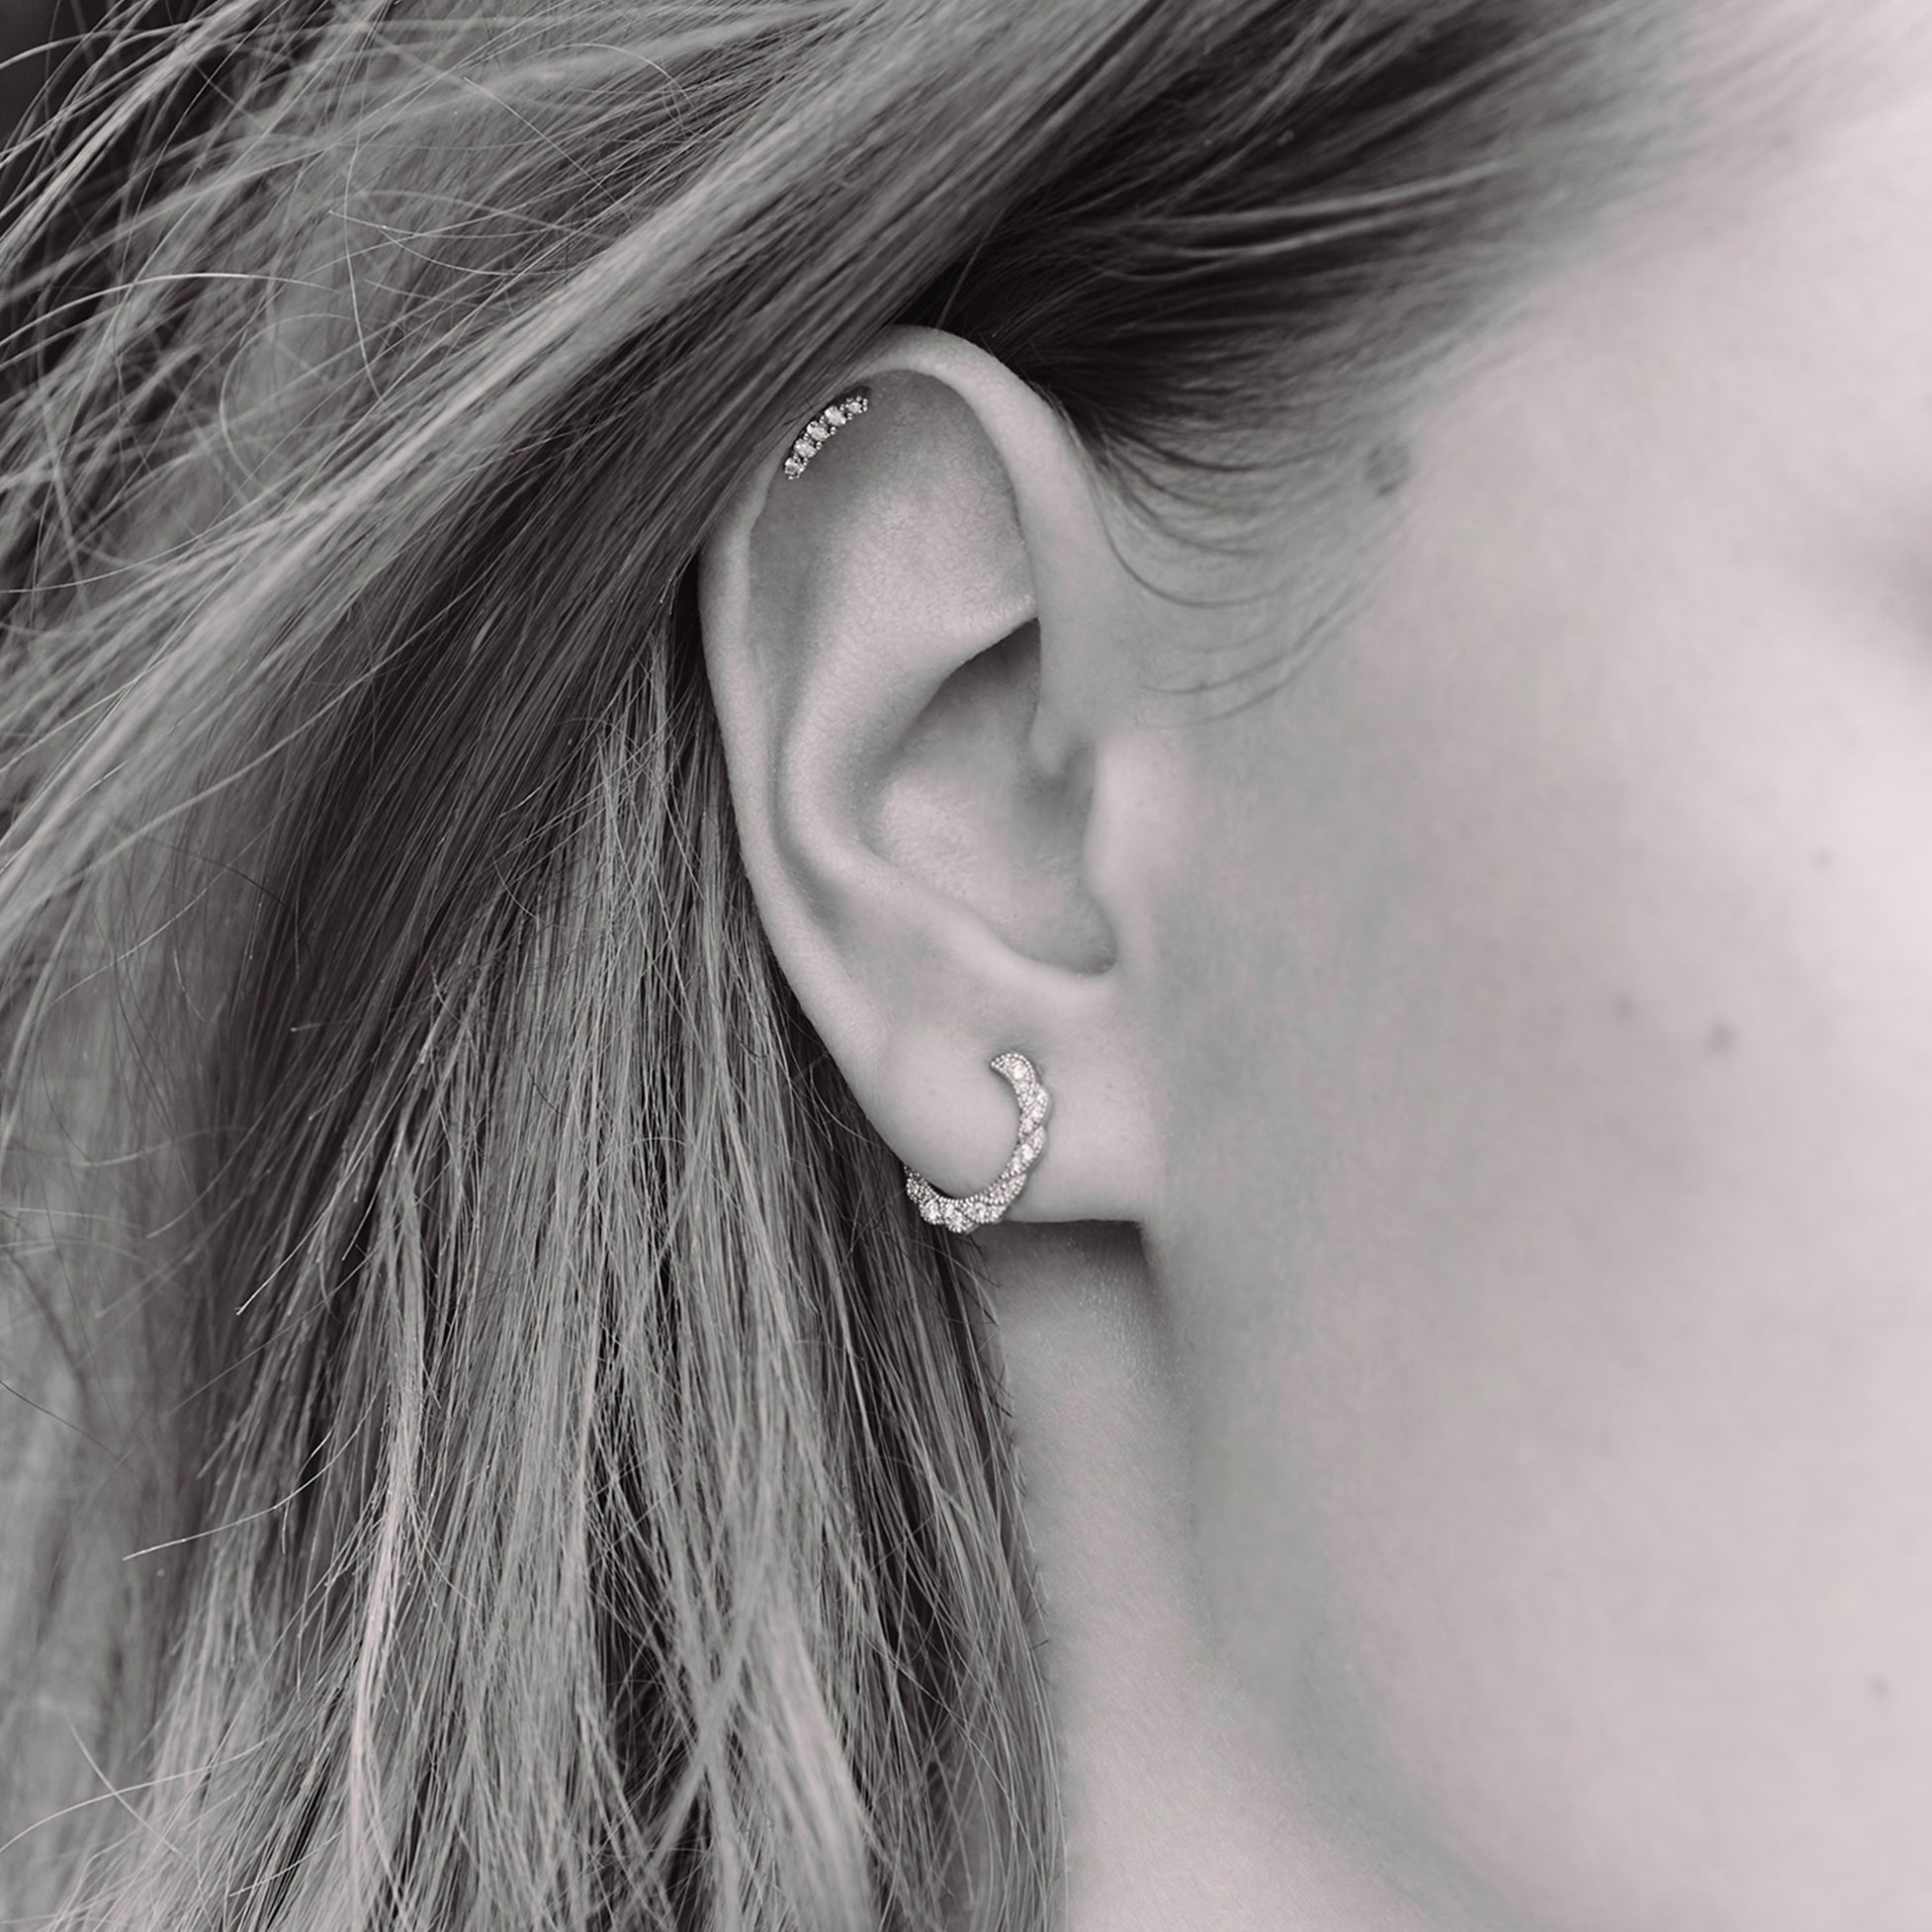 Single earring - Line